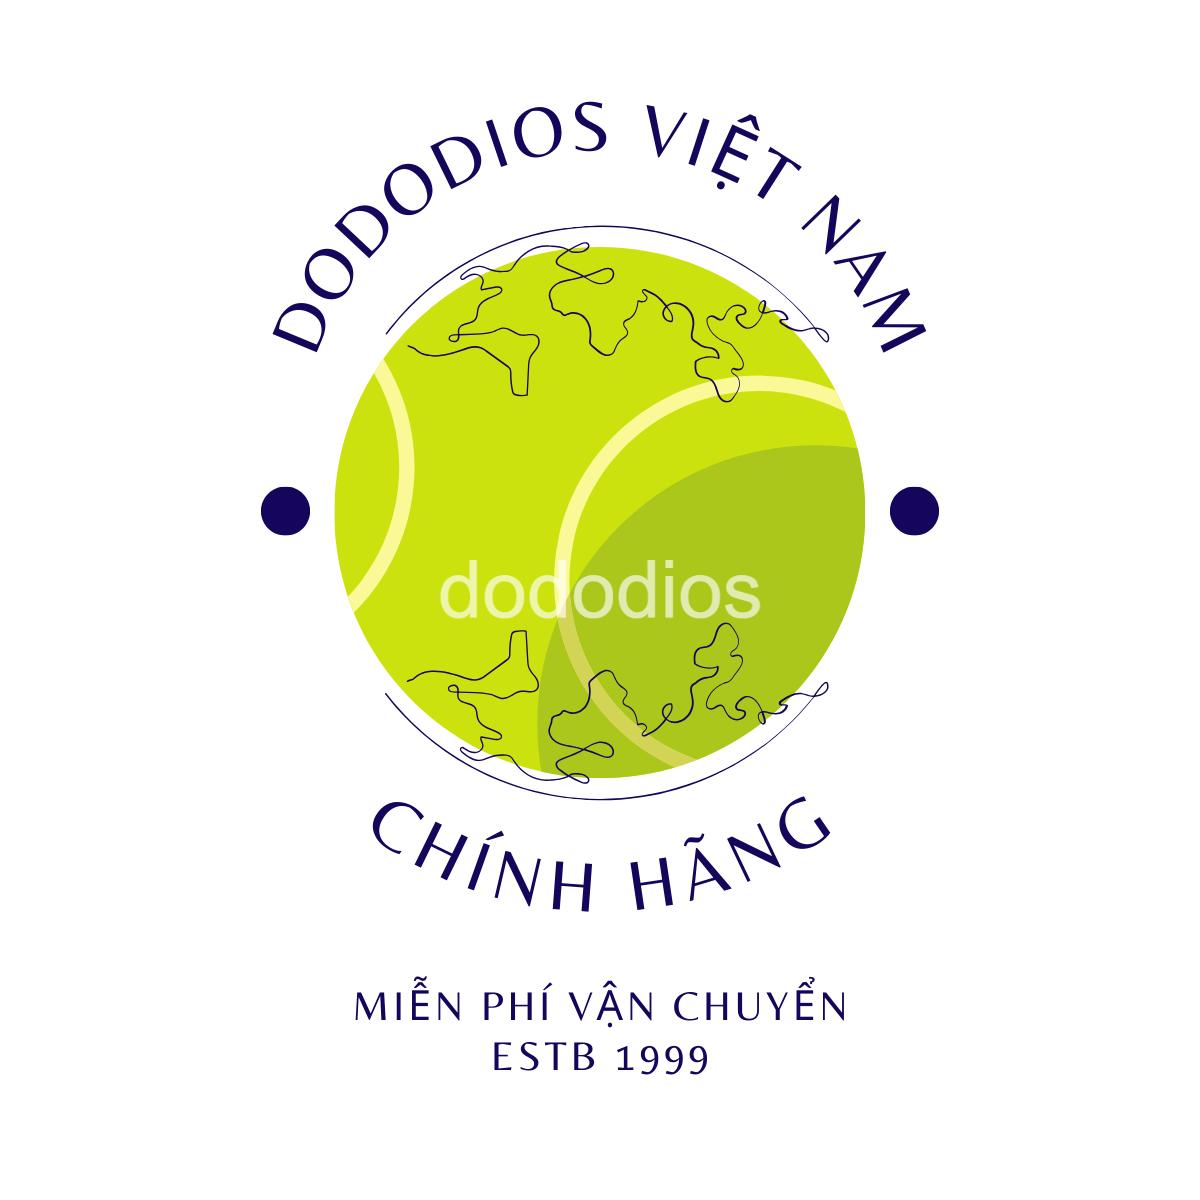 combo 10 Bóng Banh Tennis Chuyên Dụng Mới 100% – Độ Nảy Cao 1.35 – 1.47m Chuẩn Quốc Tế - Chính hãng dododios